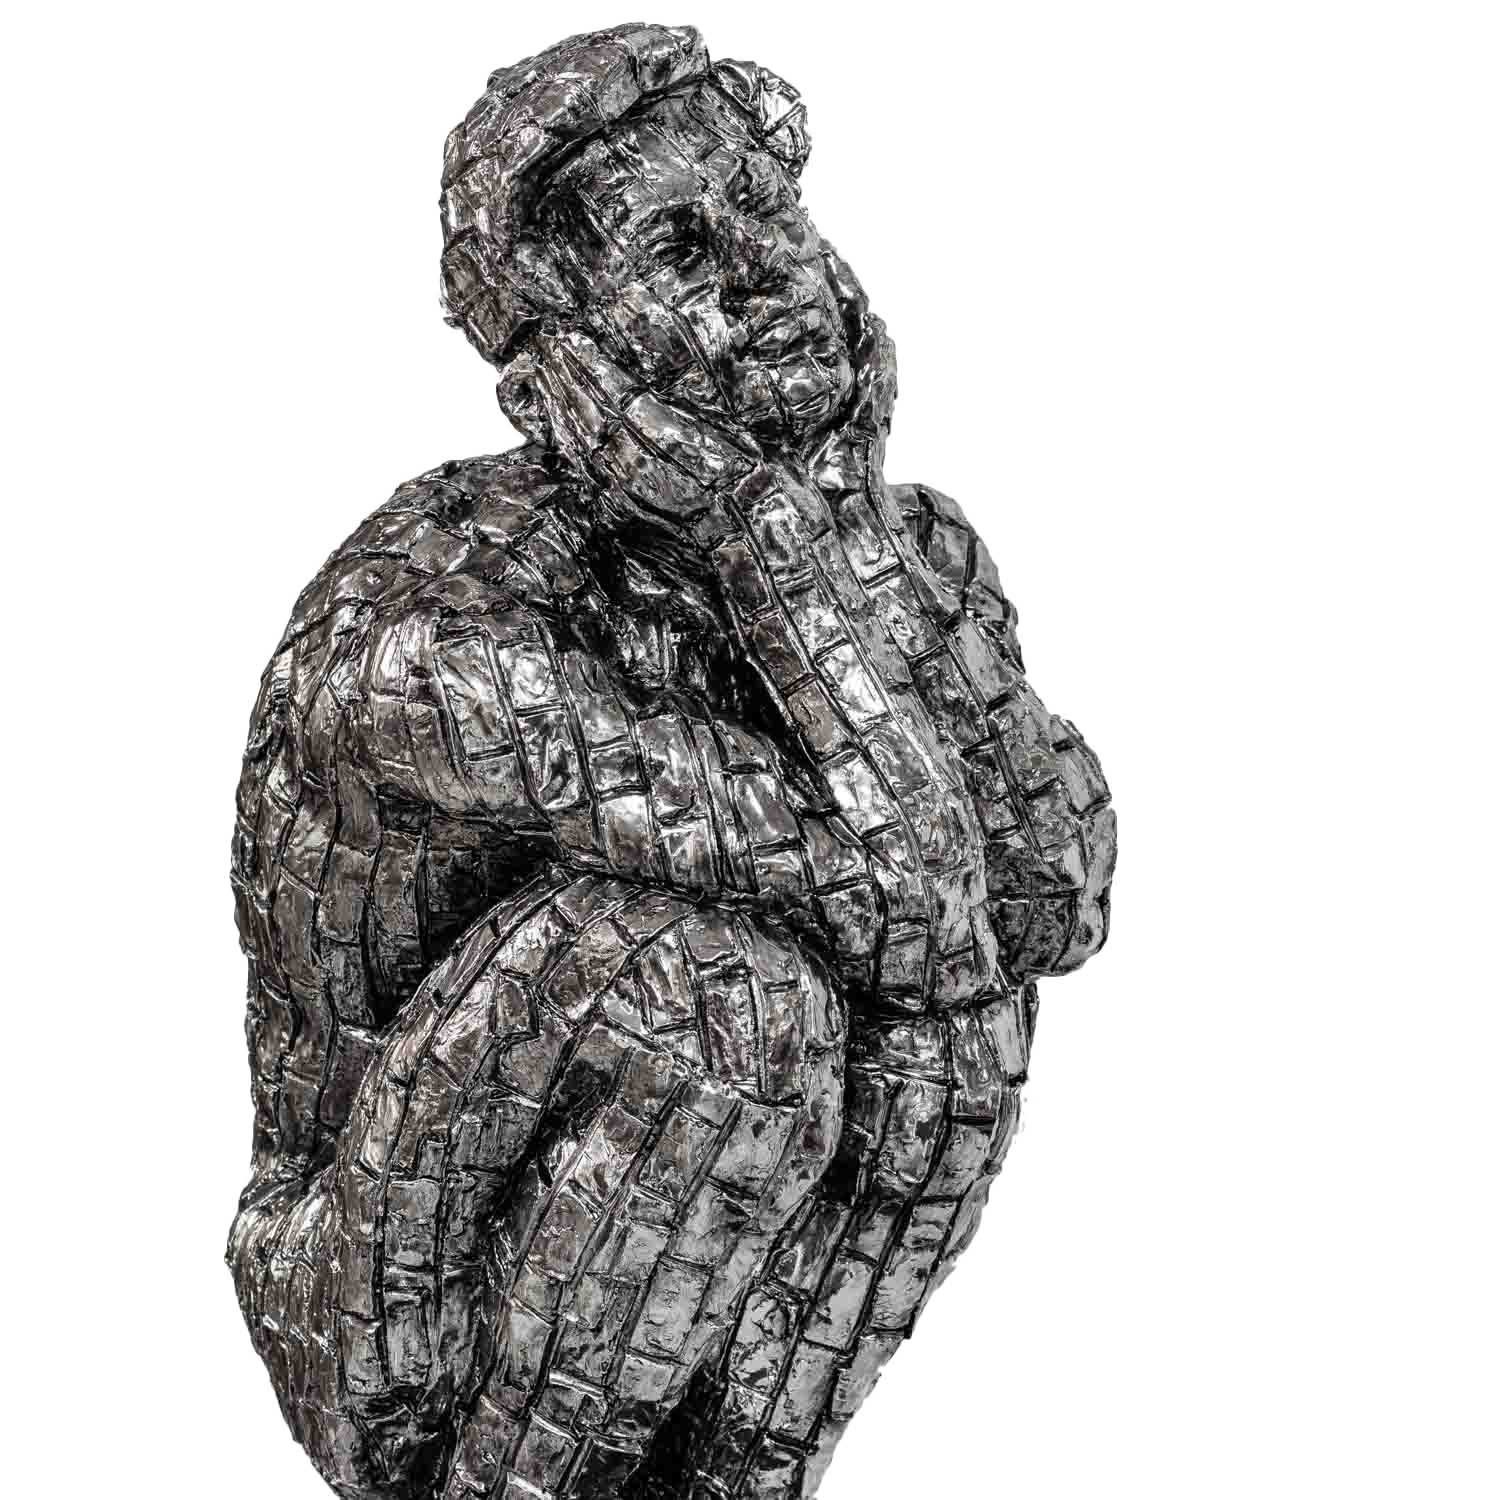 Antik-Stil - Figur Skulptur Dekofigur Mann 35cm Kunst Dekoration Aubaho